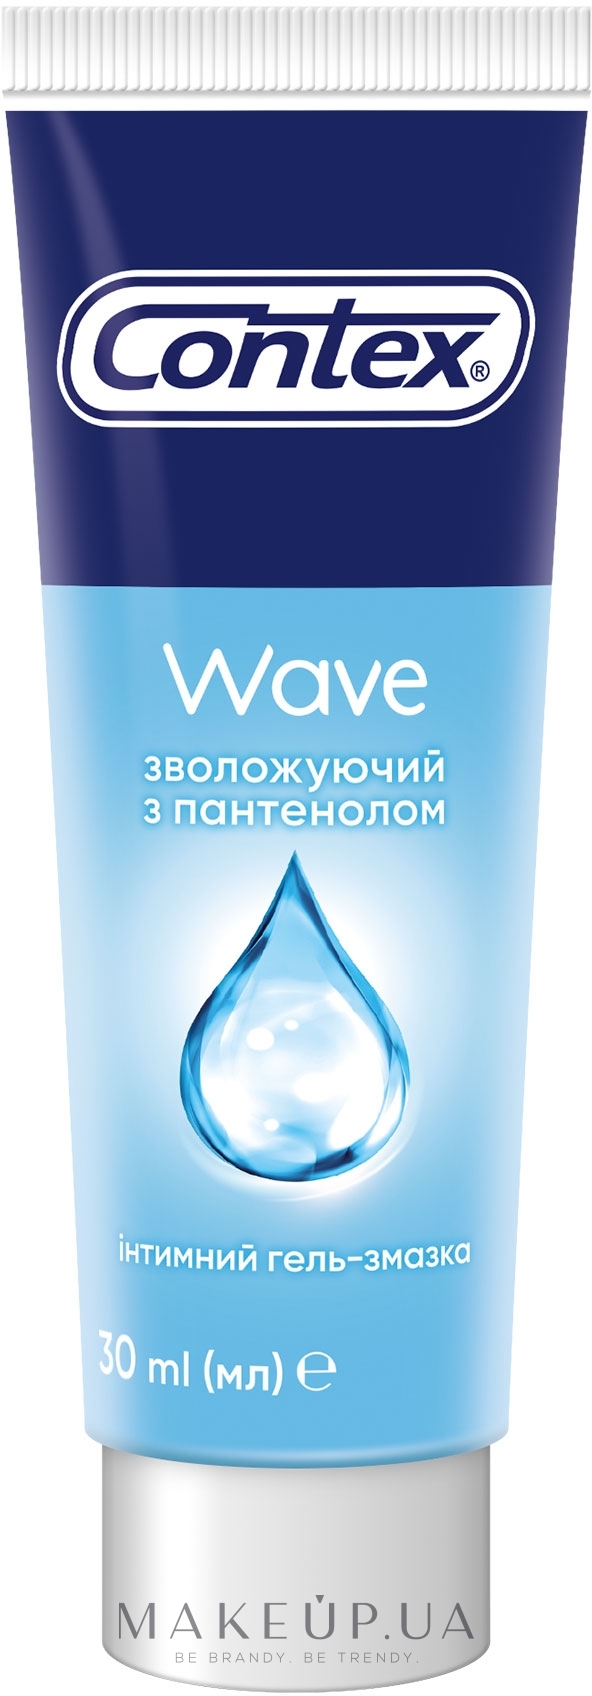 Интимный гель-смазка увлажняющий с пантенолом (лубрикант) - Contex Wave:  купить по лучшей цене в Украине | Makeup.ua